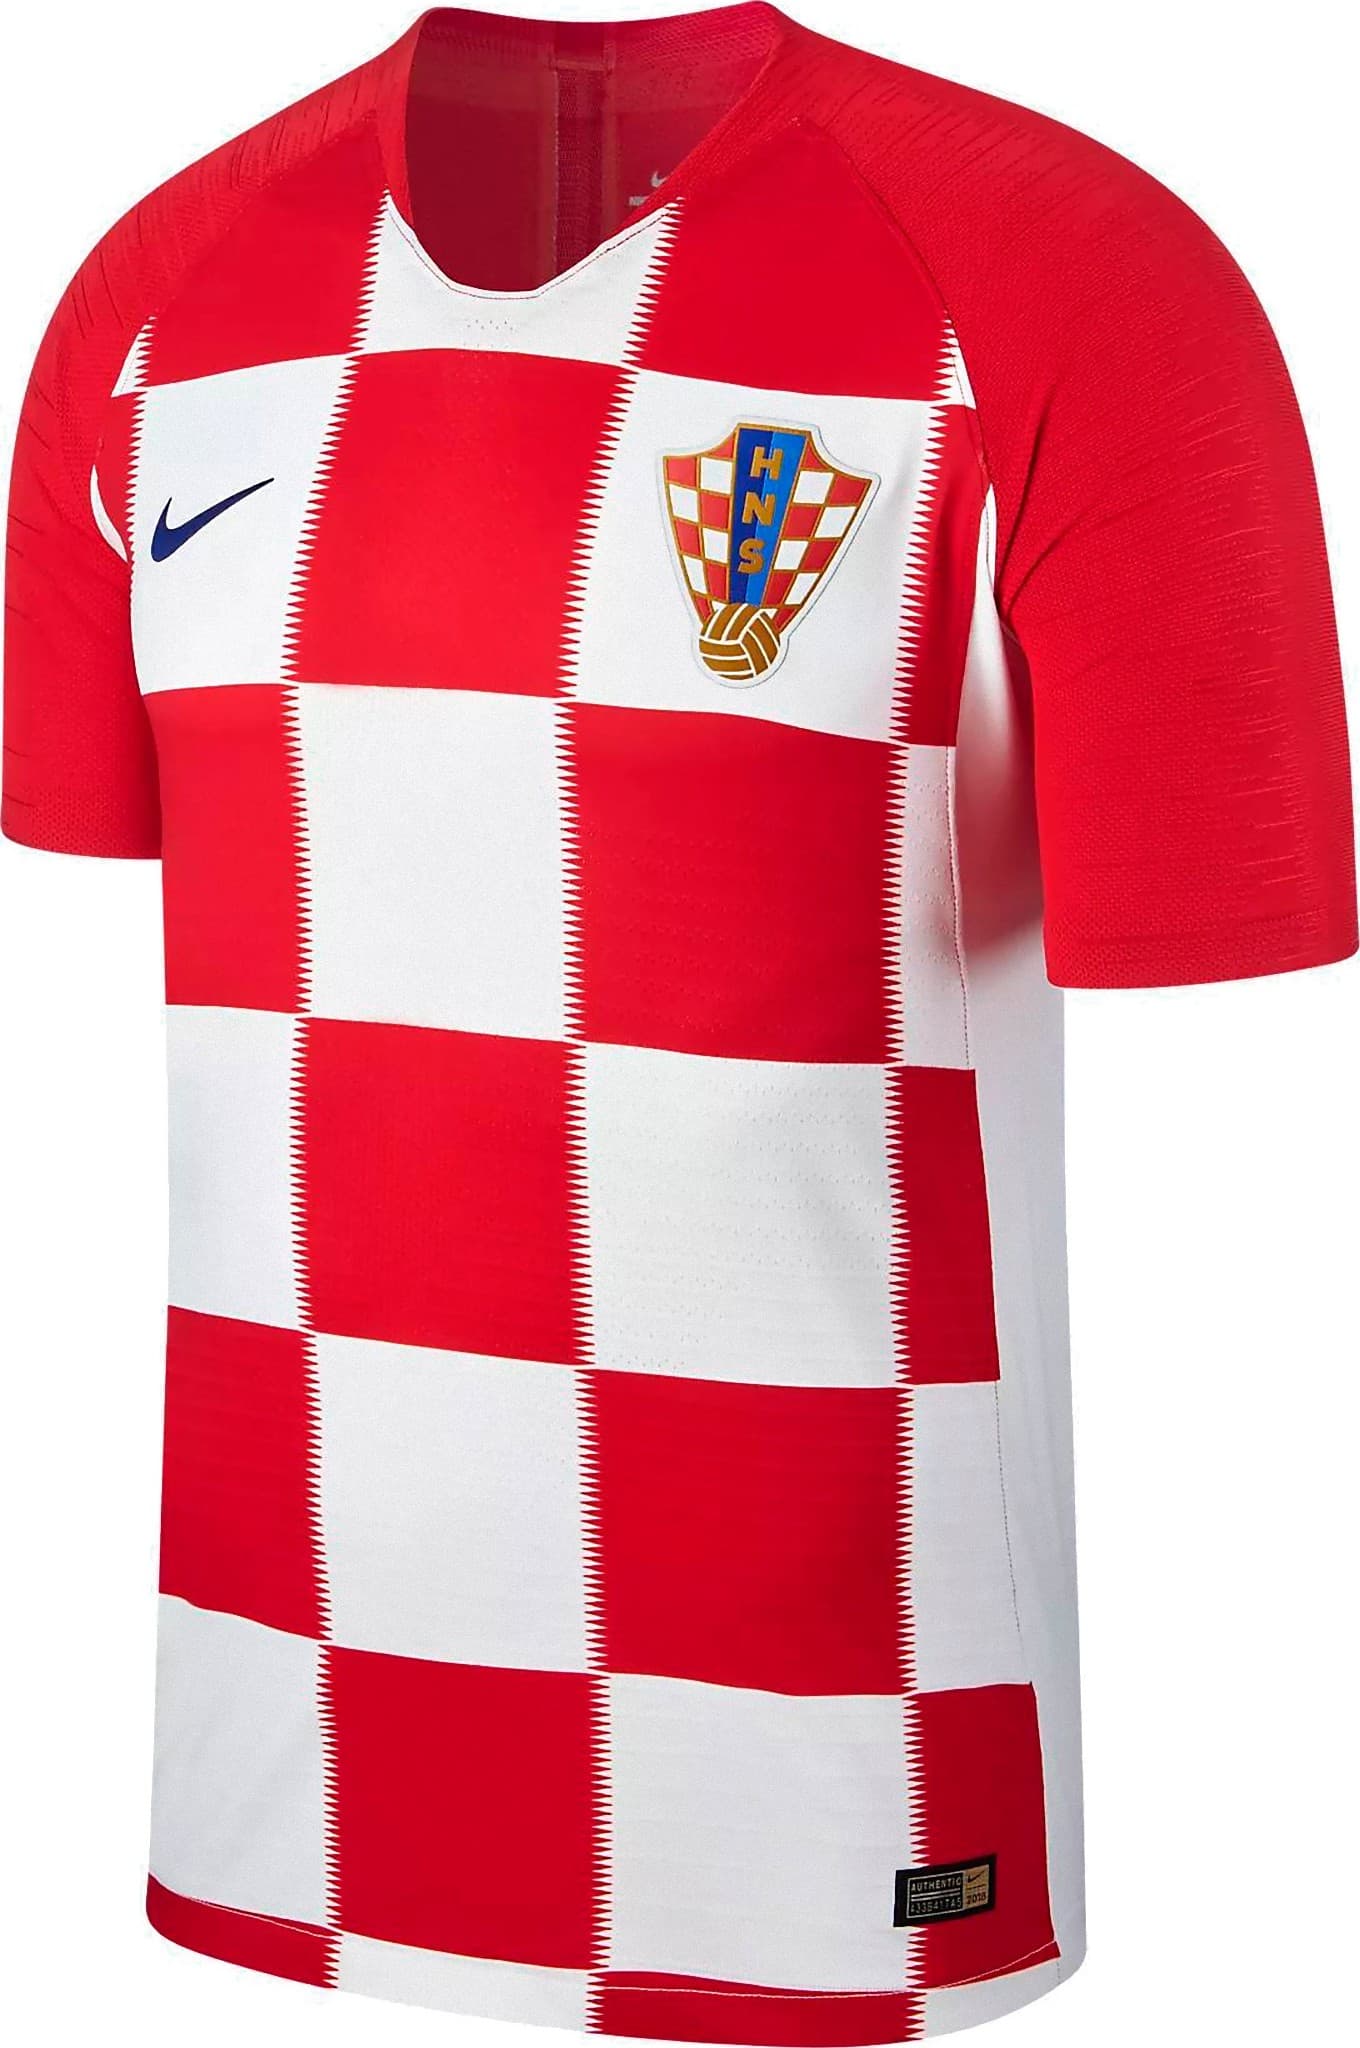 クロアチア代表 18 ワールドカップユニフォーム ユニ11